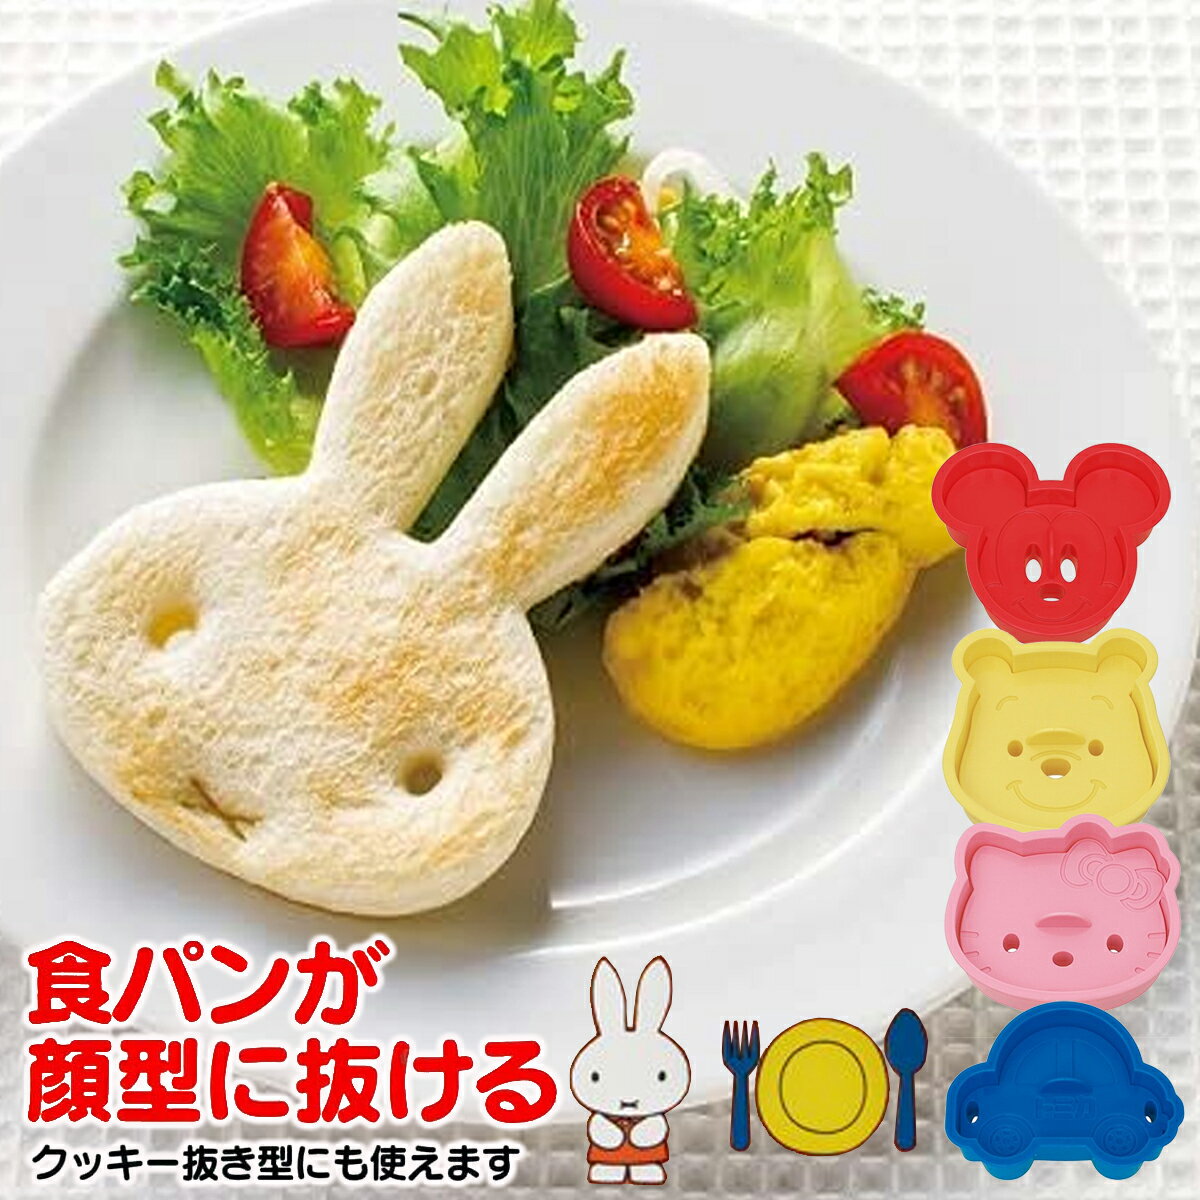 ディズニー 食パン抜き型 PNB1 日本製 クッキー抜き型にも◎ 調理器具 お弁当グッズ ミッフィー キティ